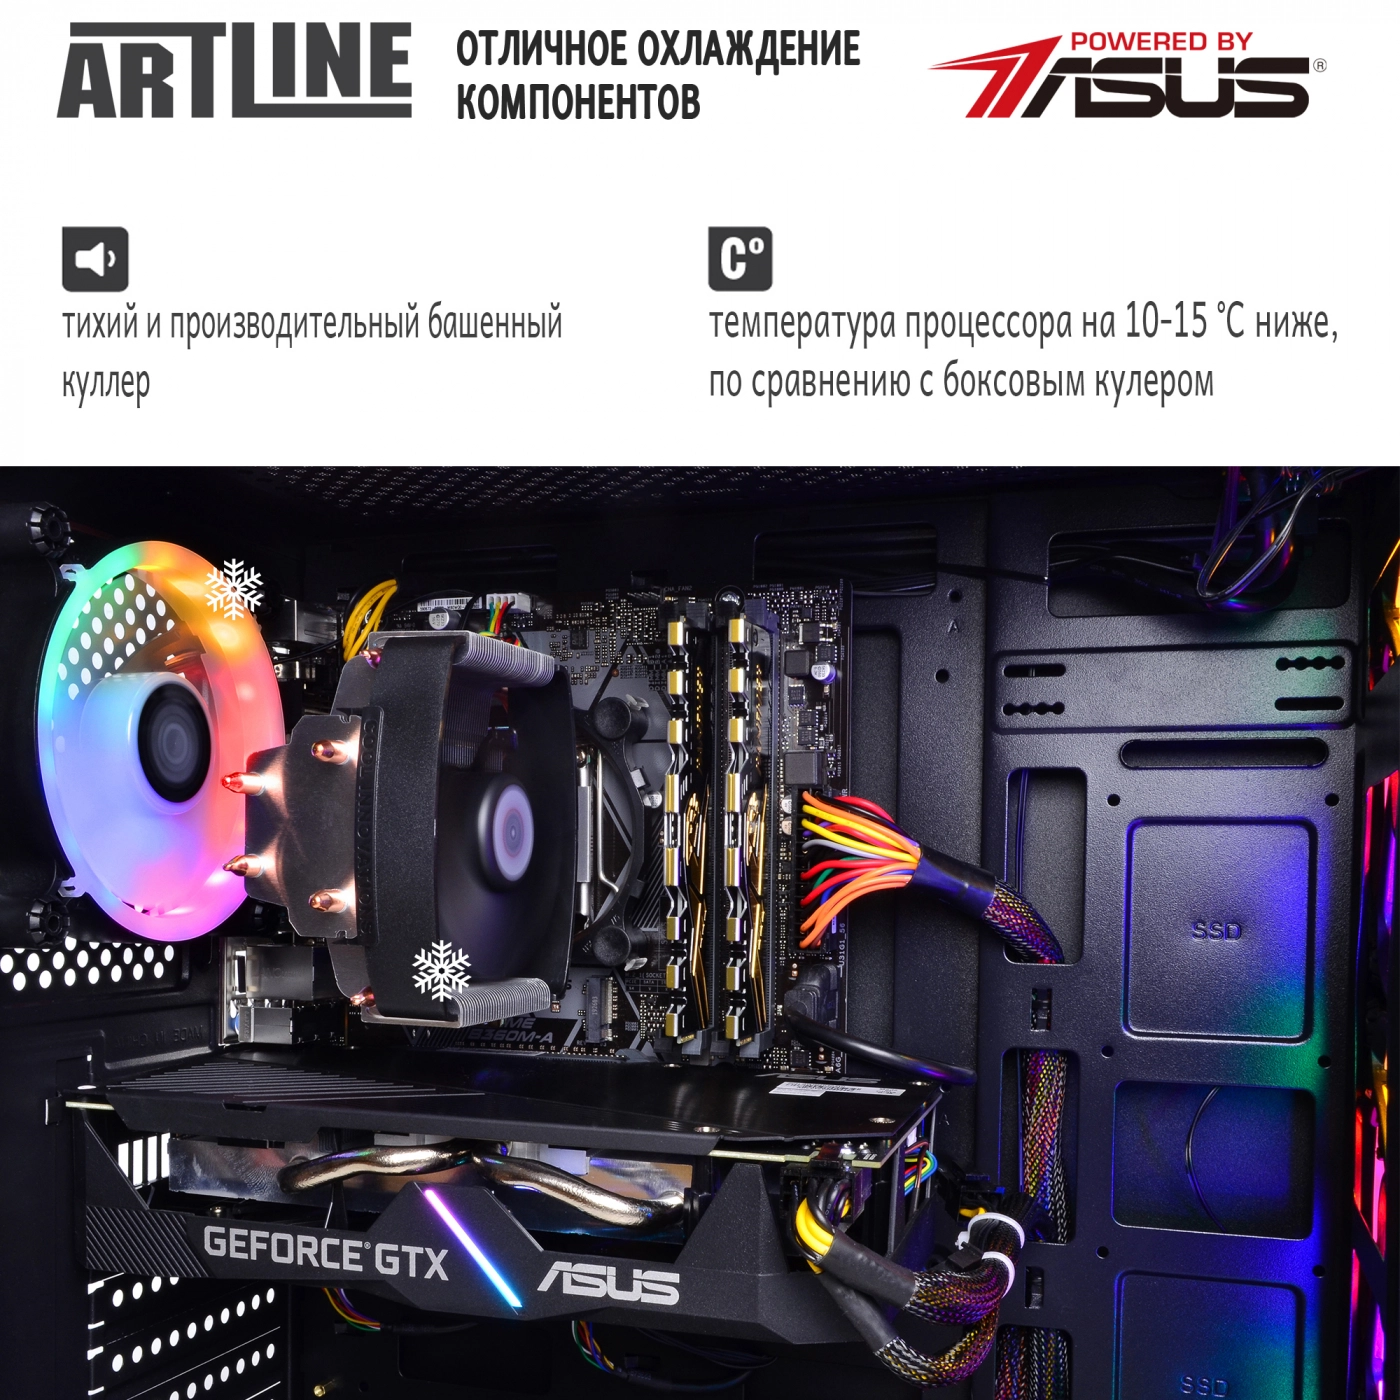 Купить Компьютер ARTLINE Gaming X37v32 - фото 8